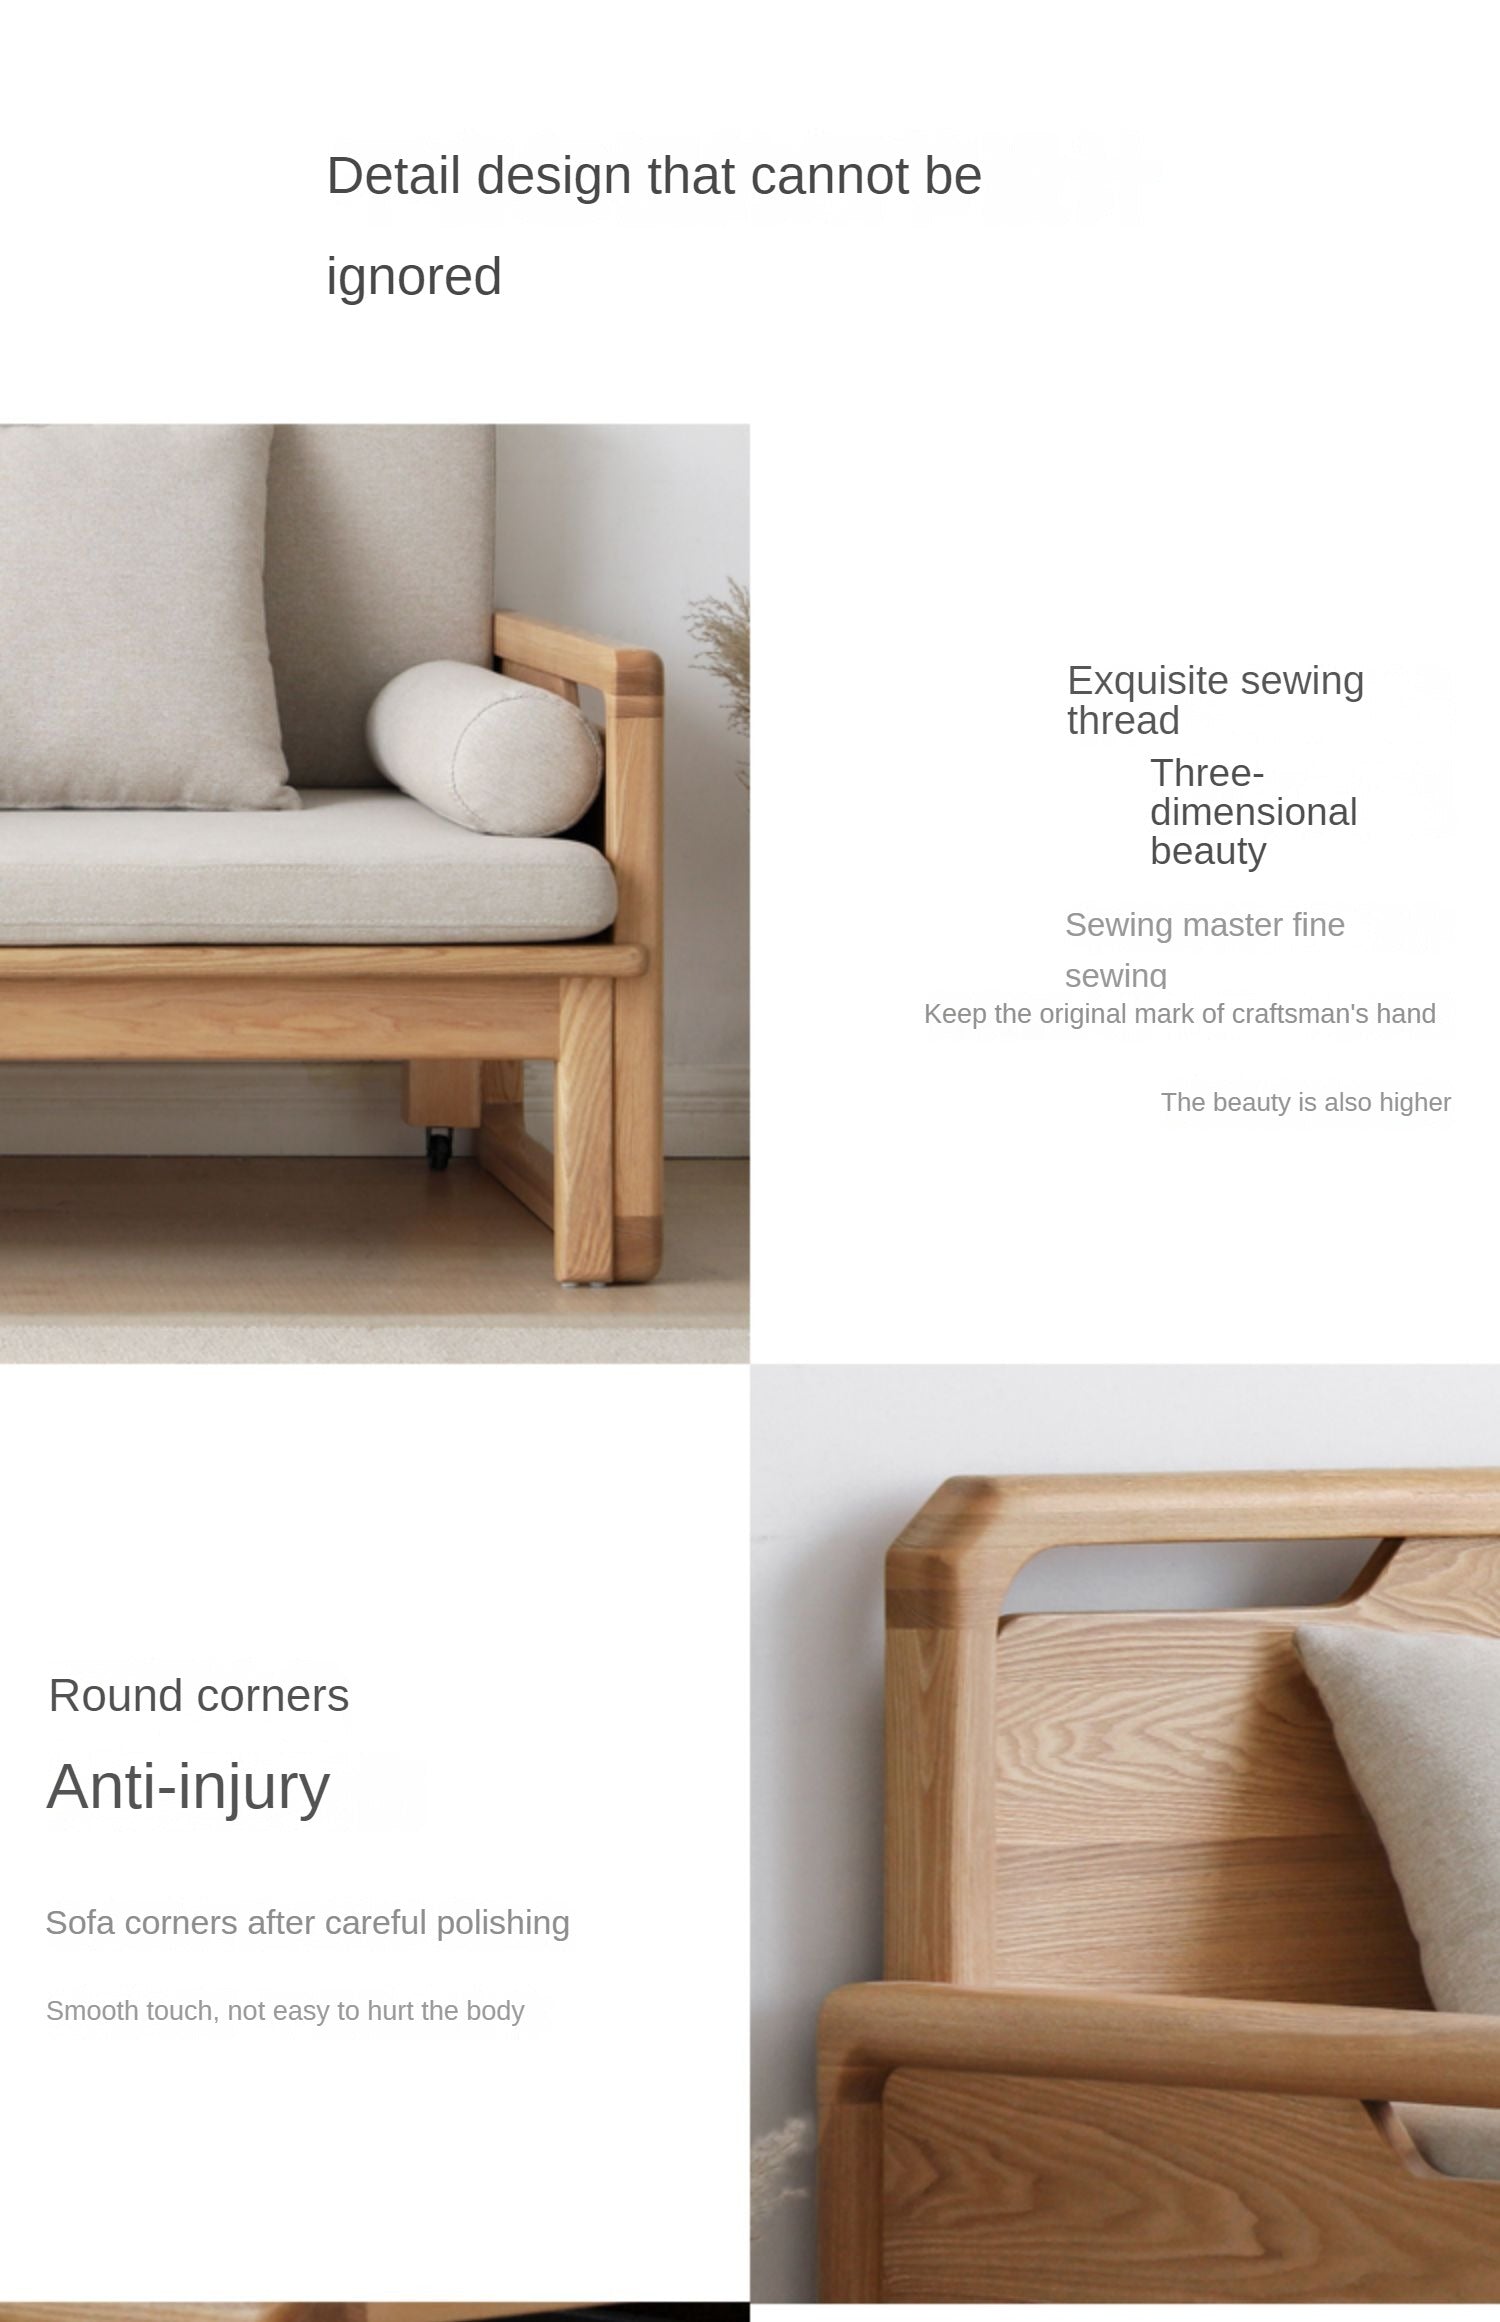 Storage Sleeper sofa Ash solid Wood